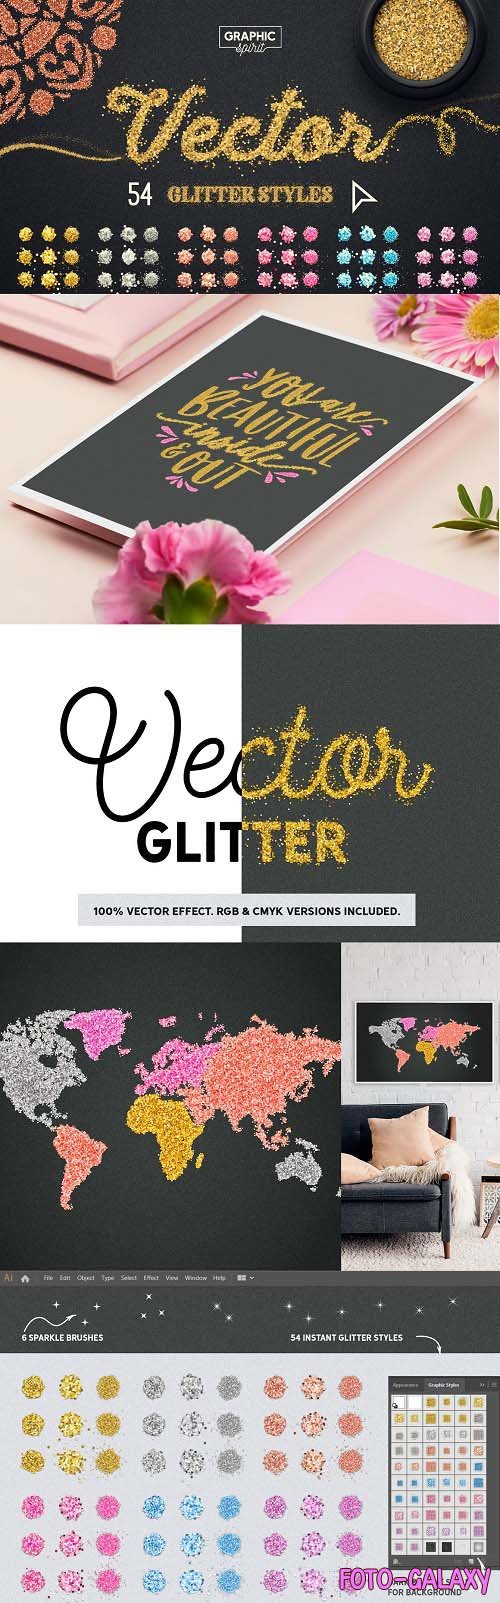 Vector Glitter For Adobe Illustrator - 3736097